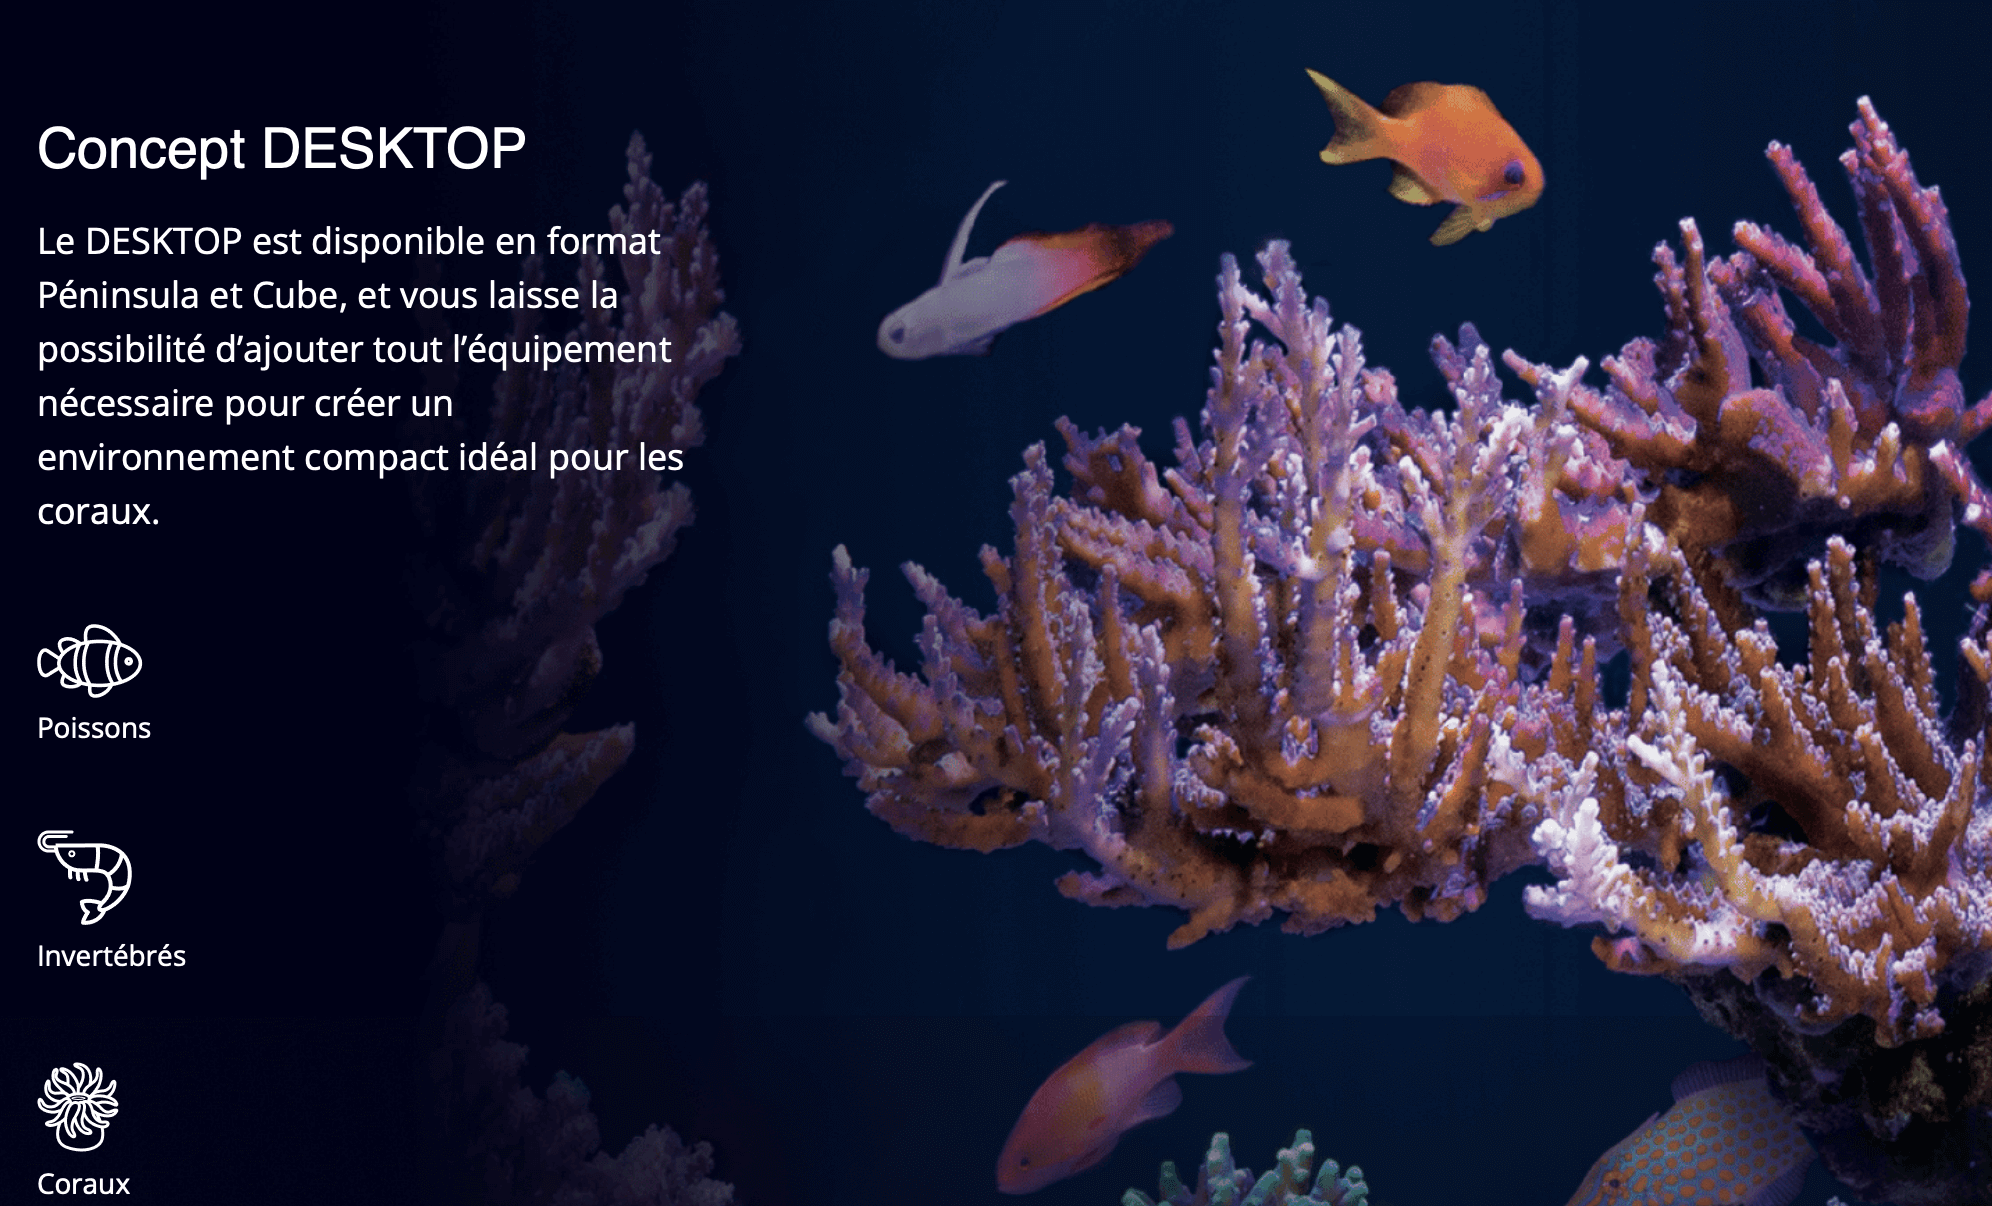 Concept DESKTOP  Le DESKTOP est disponible en format Péninsula et Cube, et vous laisse la possibilité d’ajouter tout l’équipement nécessaire pour créer un environnement compact idéal pour les coraux.